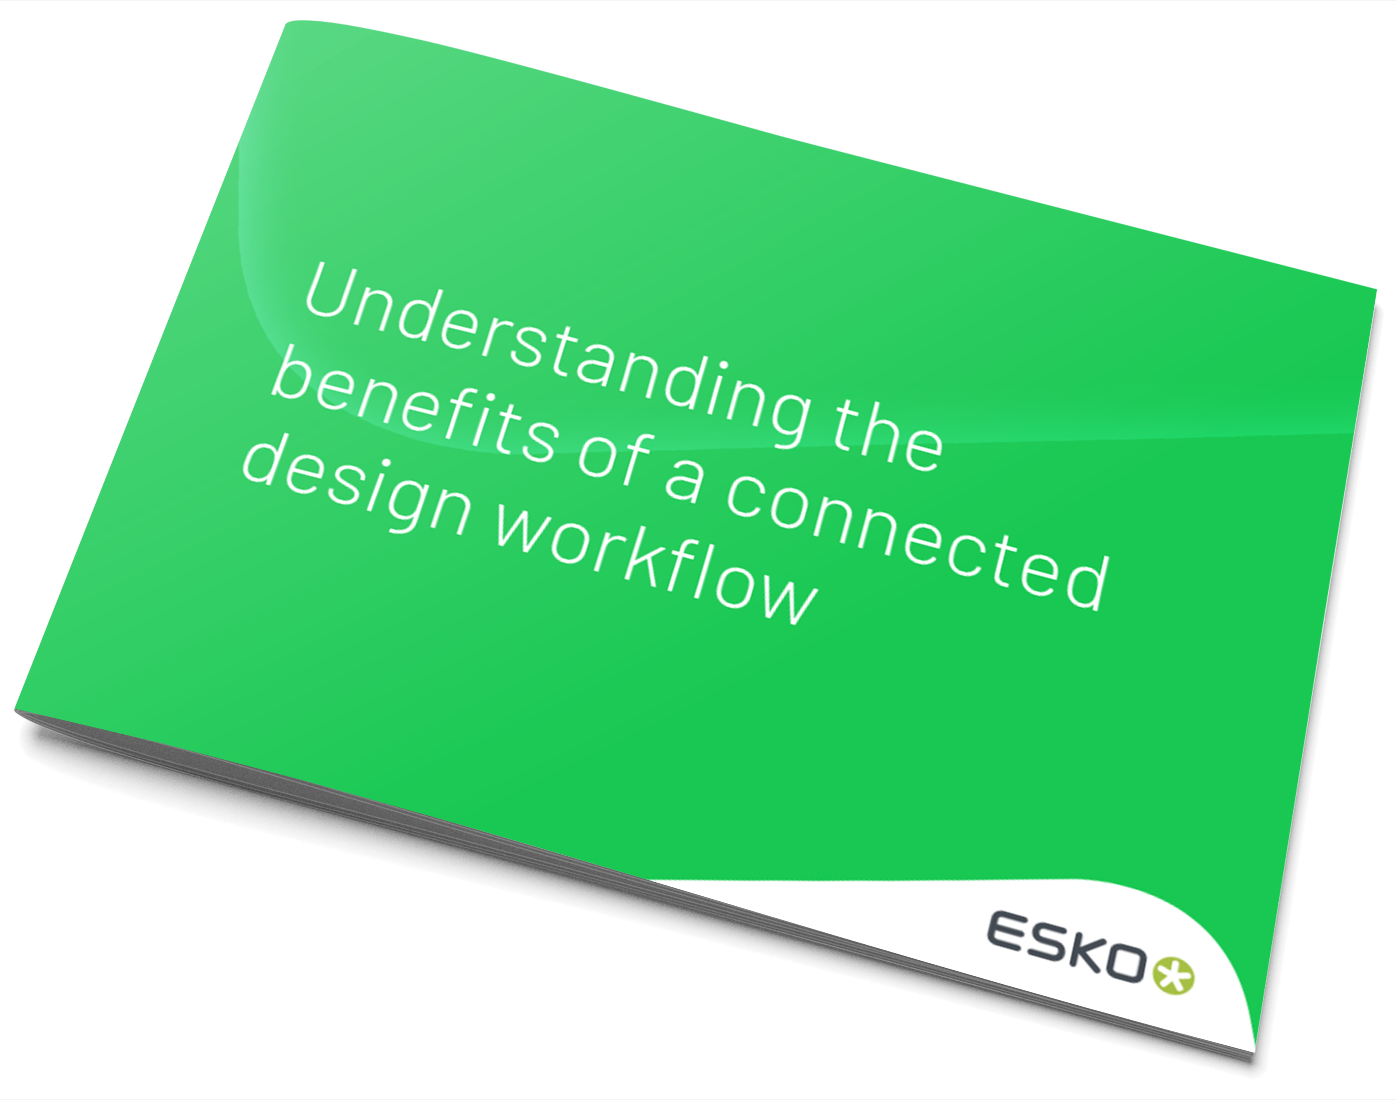 understanding benefits of connected design workflow